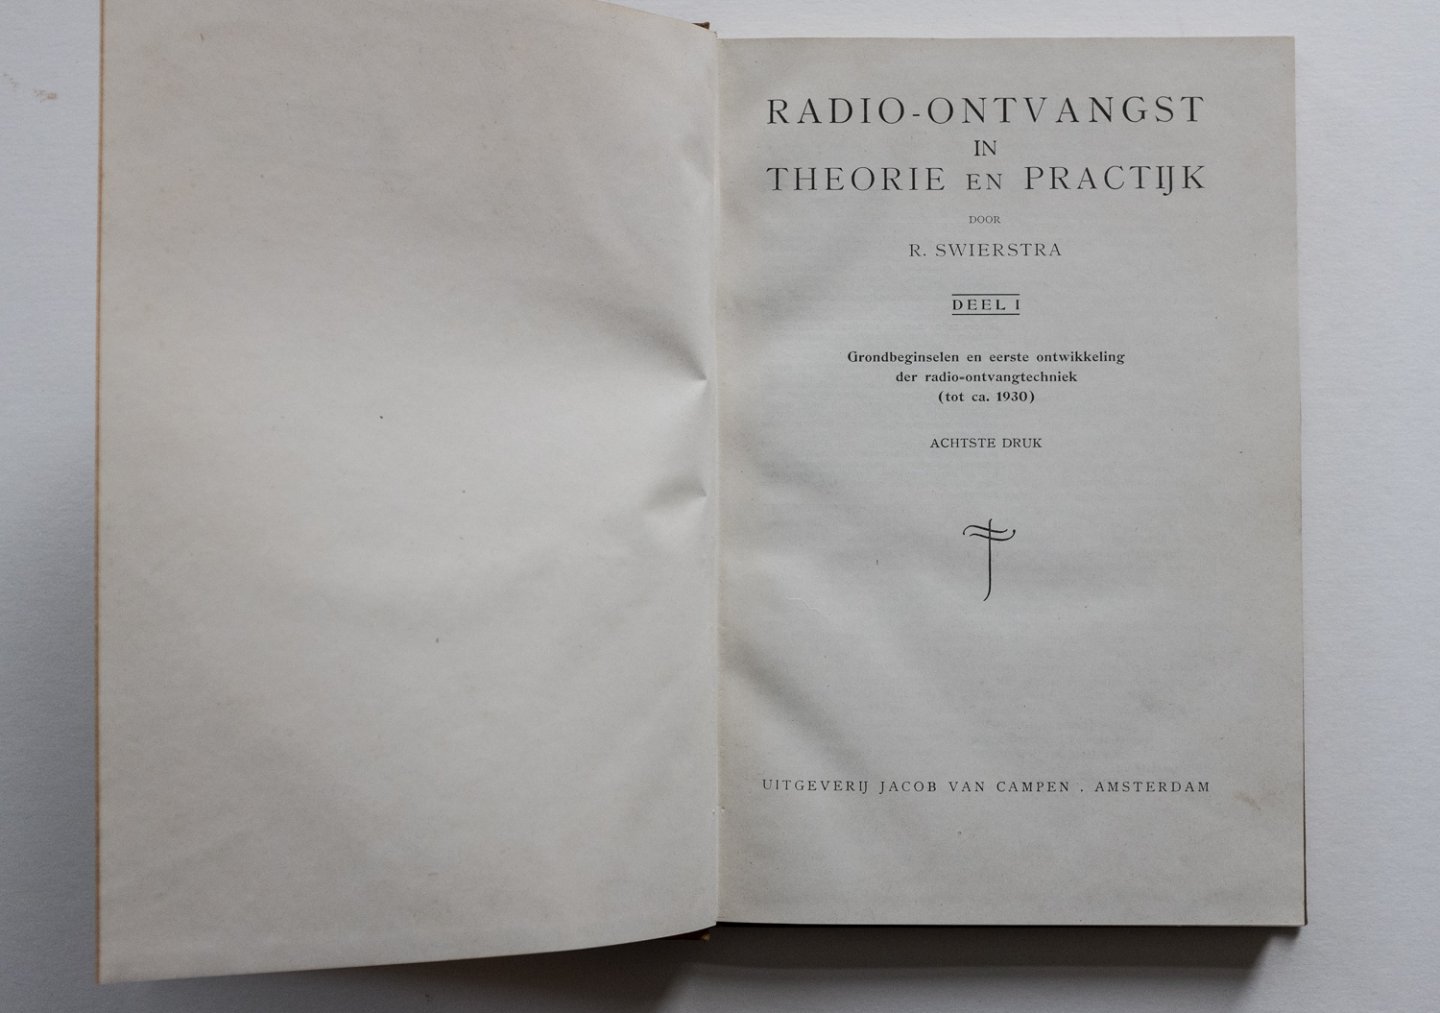 Swierstra, R. - Radio-ontvangst in theorie en practijk - grondbeginselen en eerste ontwikkeling der radio-ontvangtechniek (tot ca. 1930)